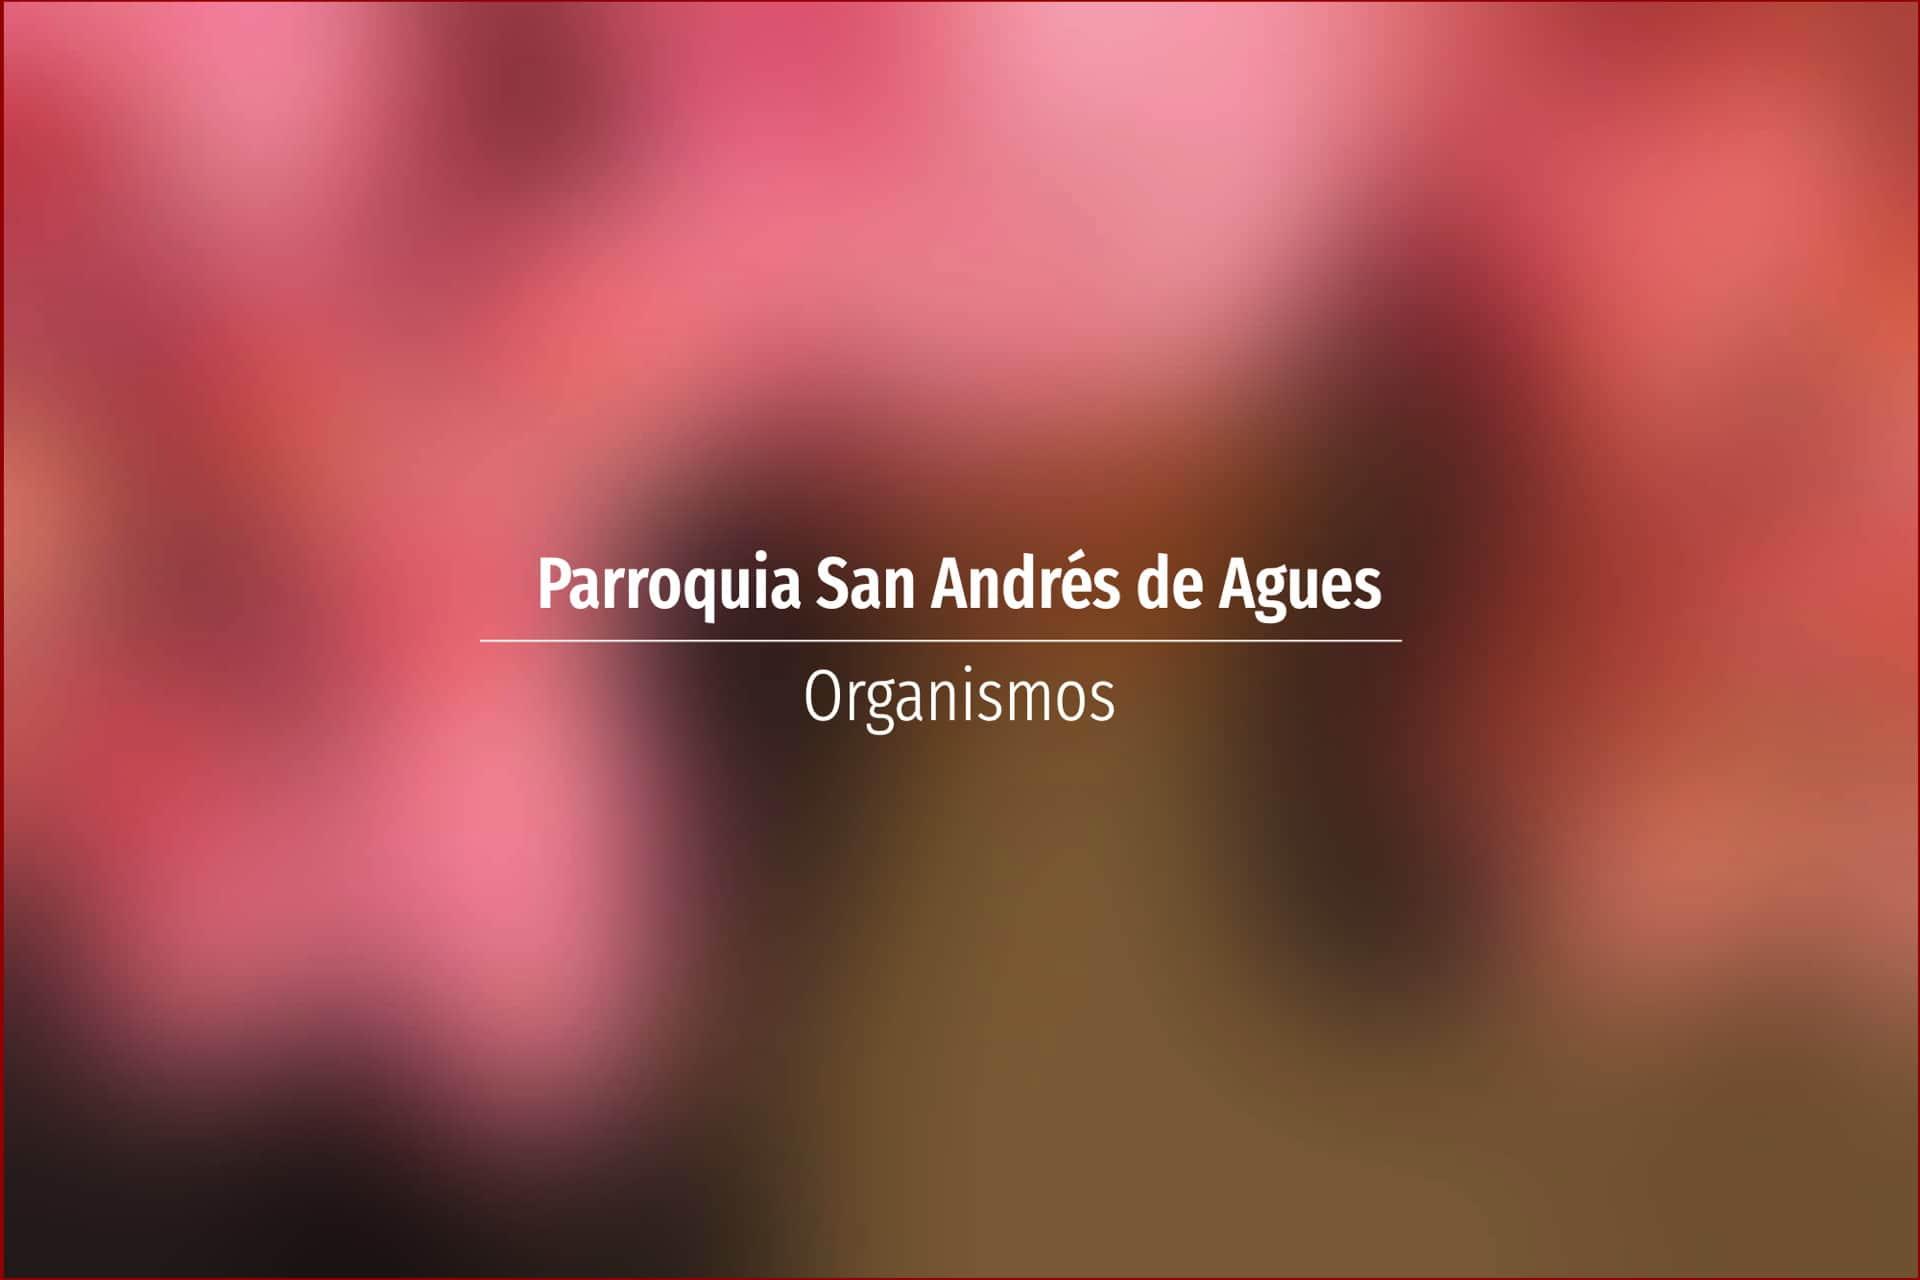 Parroquia San Andrés de Agues